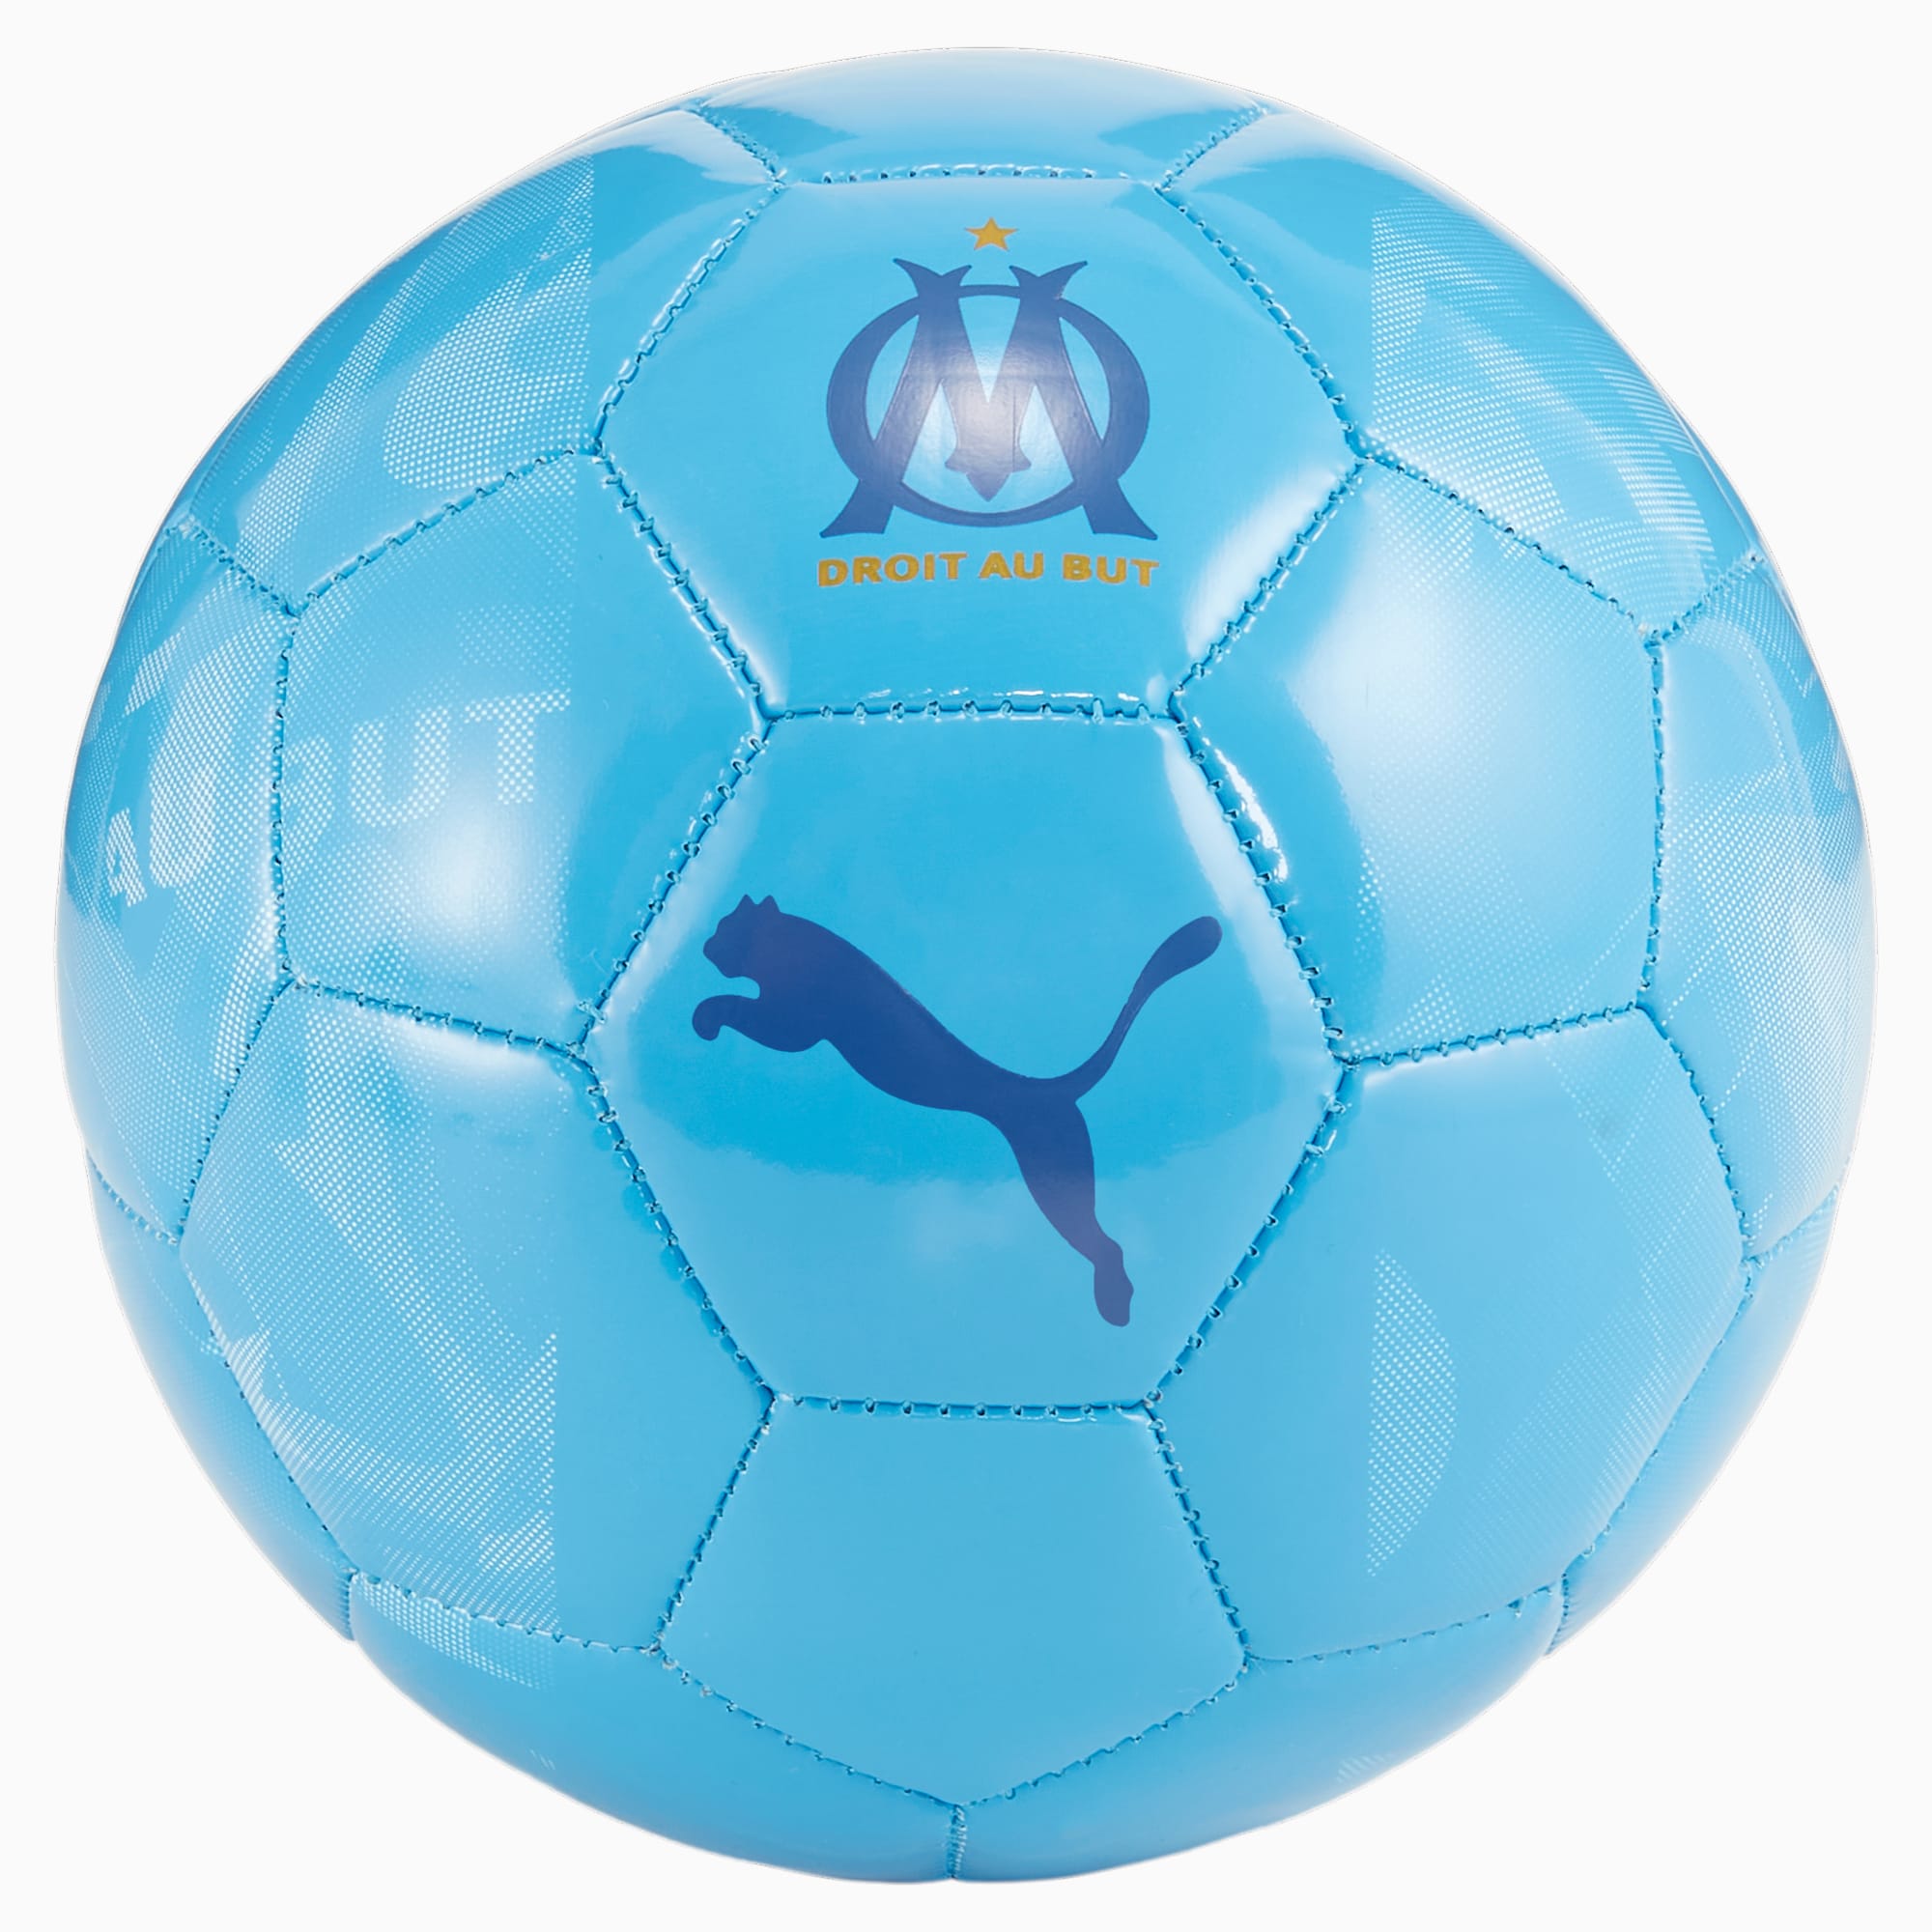 PUMA Minibalón De Fútbol Prepartido Olympique De Marsella 23/24, Azul